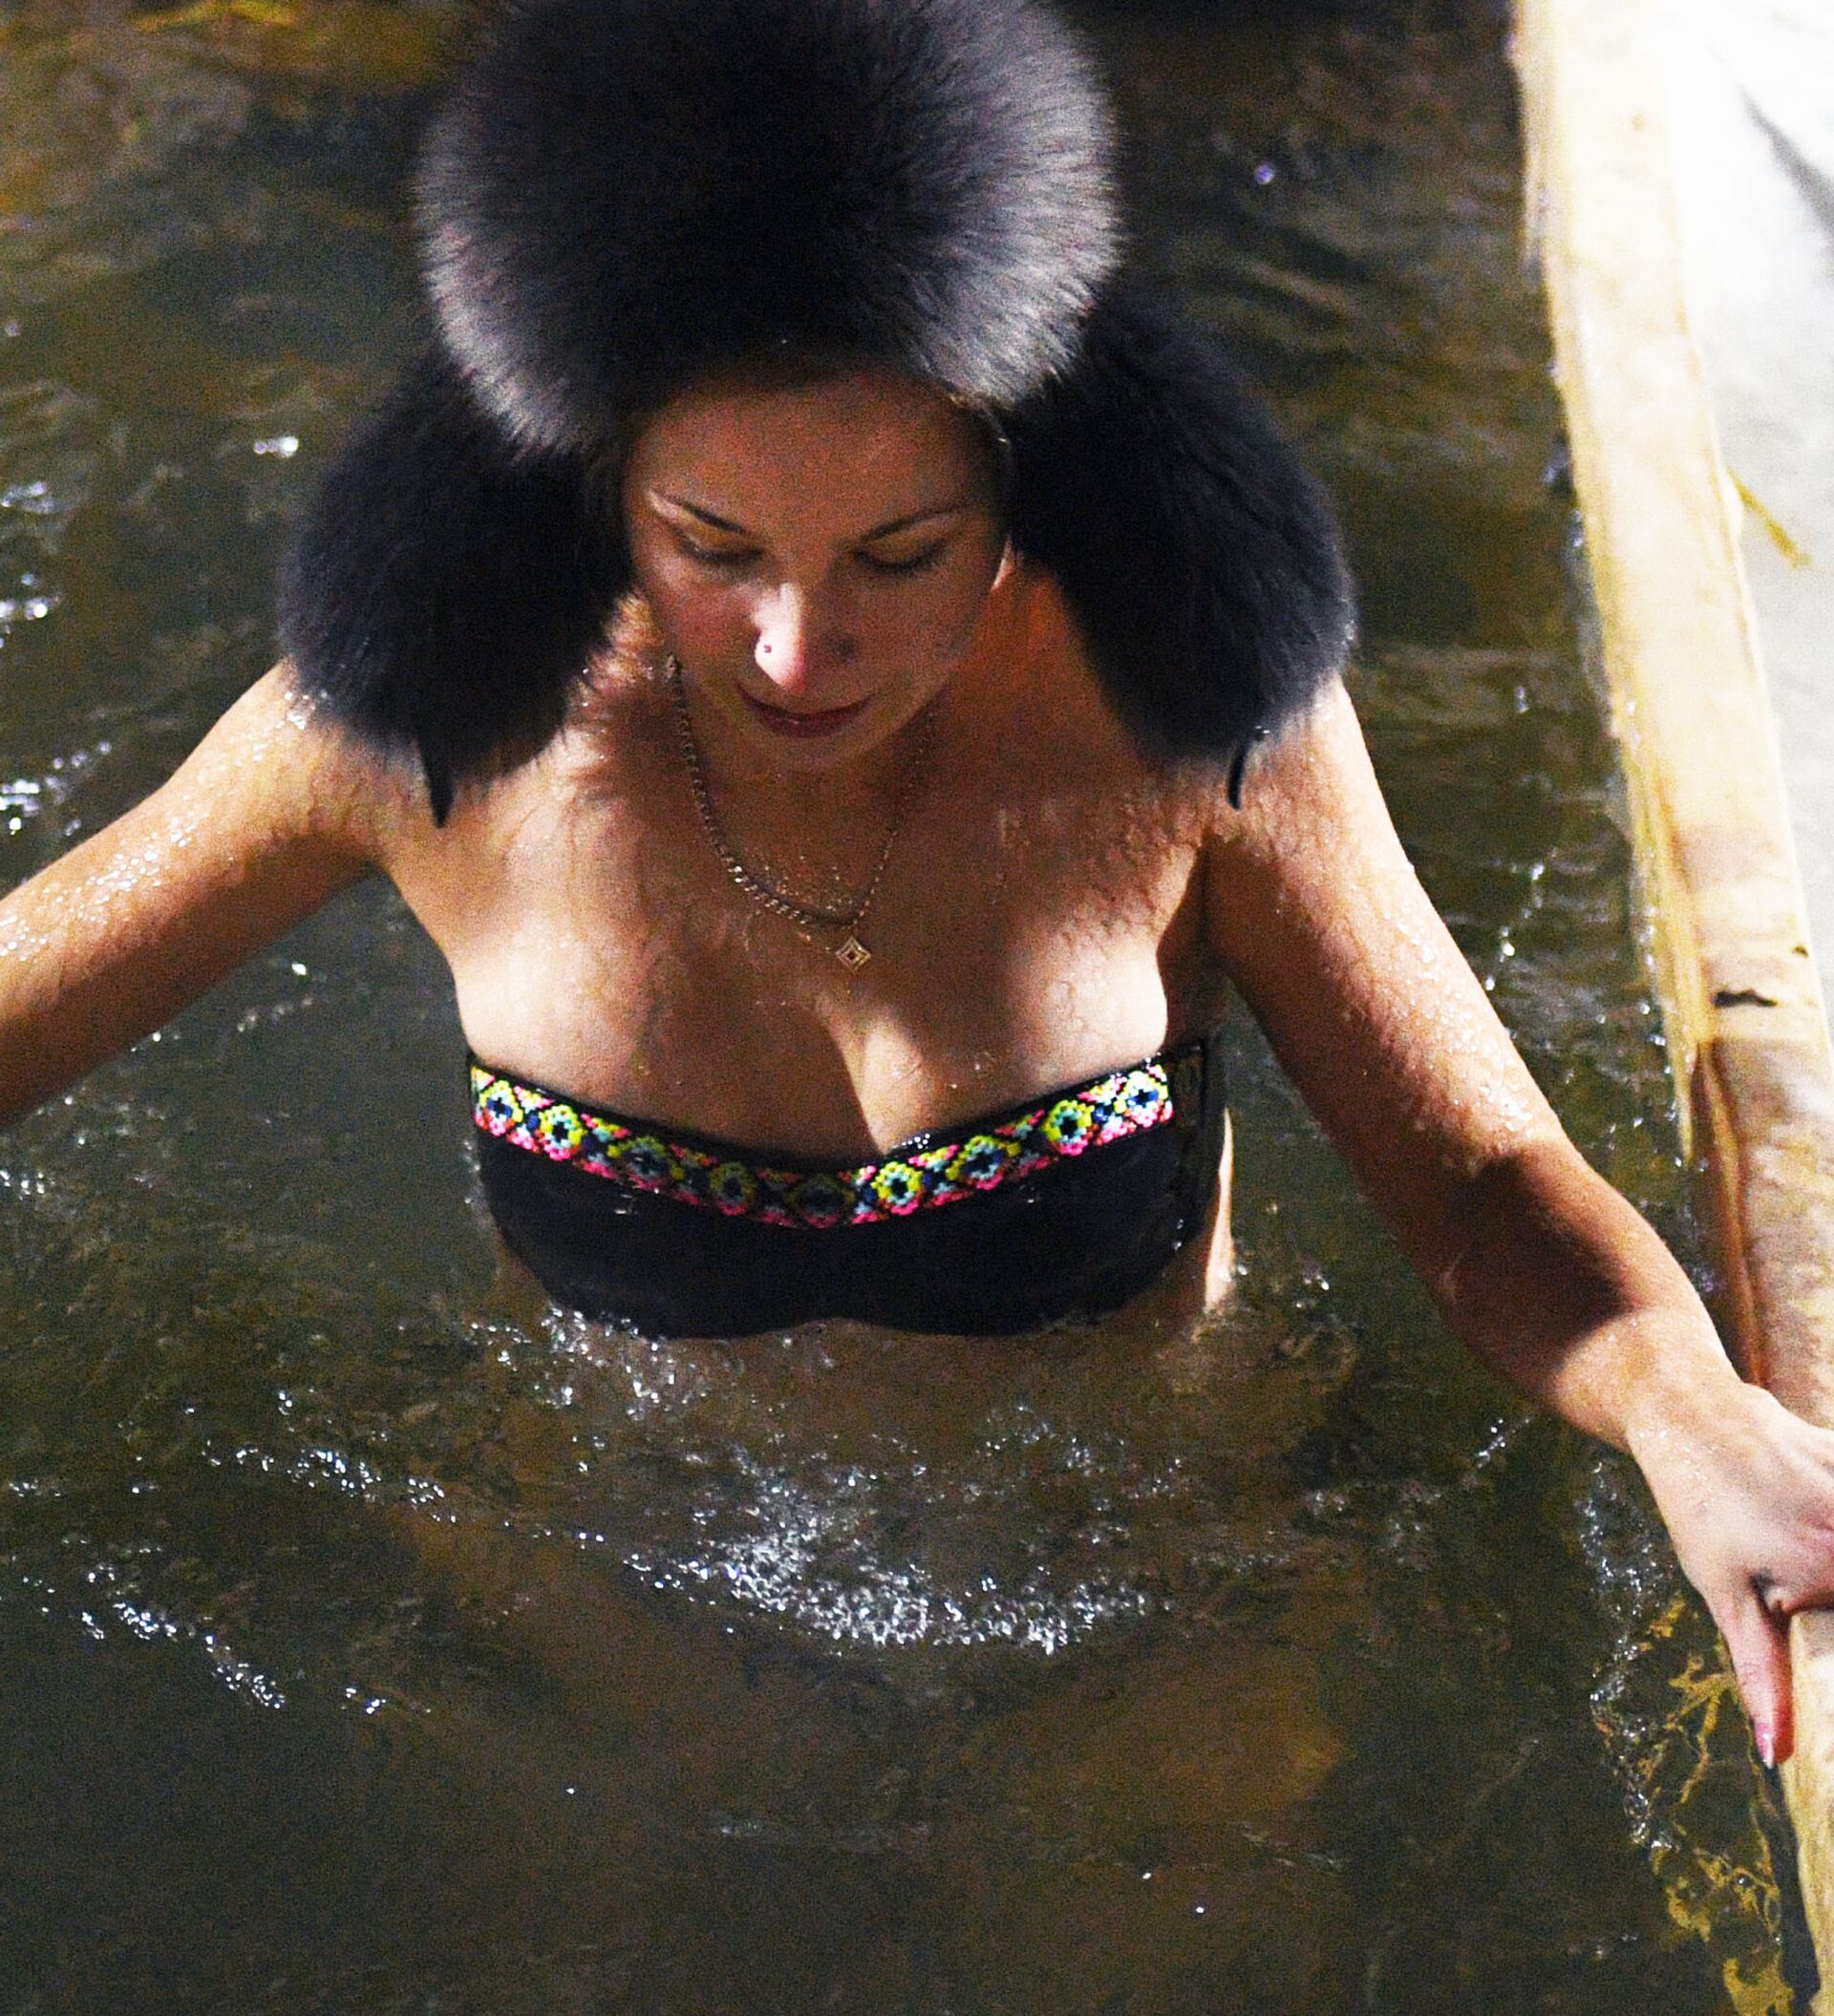 Искупалась видео. Женщины купаются. Узбекские женщины купаются в проруби.